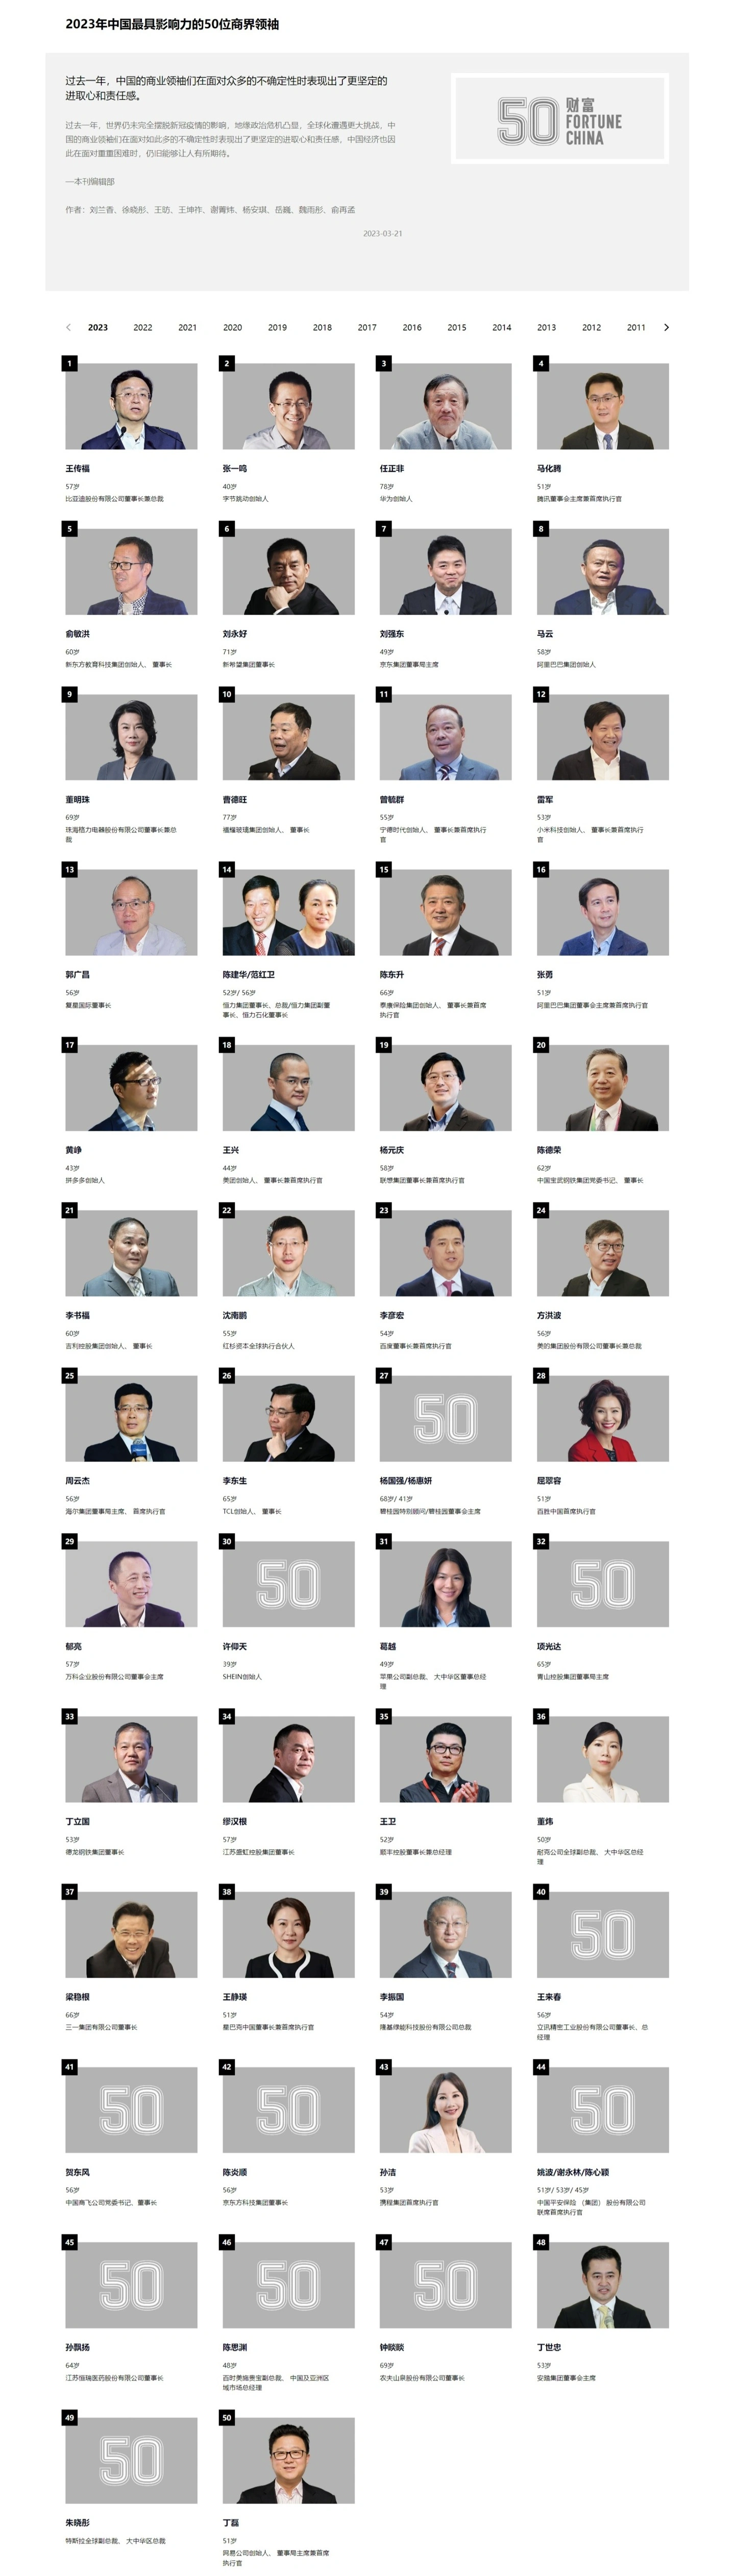 賭馬：2023 中國最具影響力 50 位商界領袖榜單出爐：王傳福、張一鳴、任正非前三